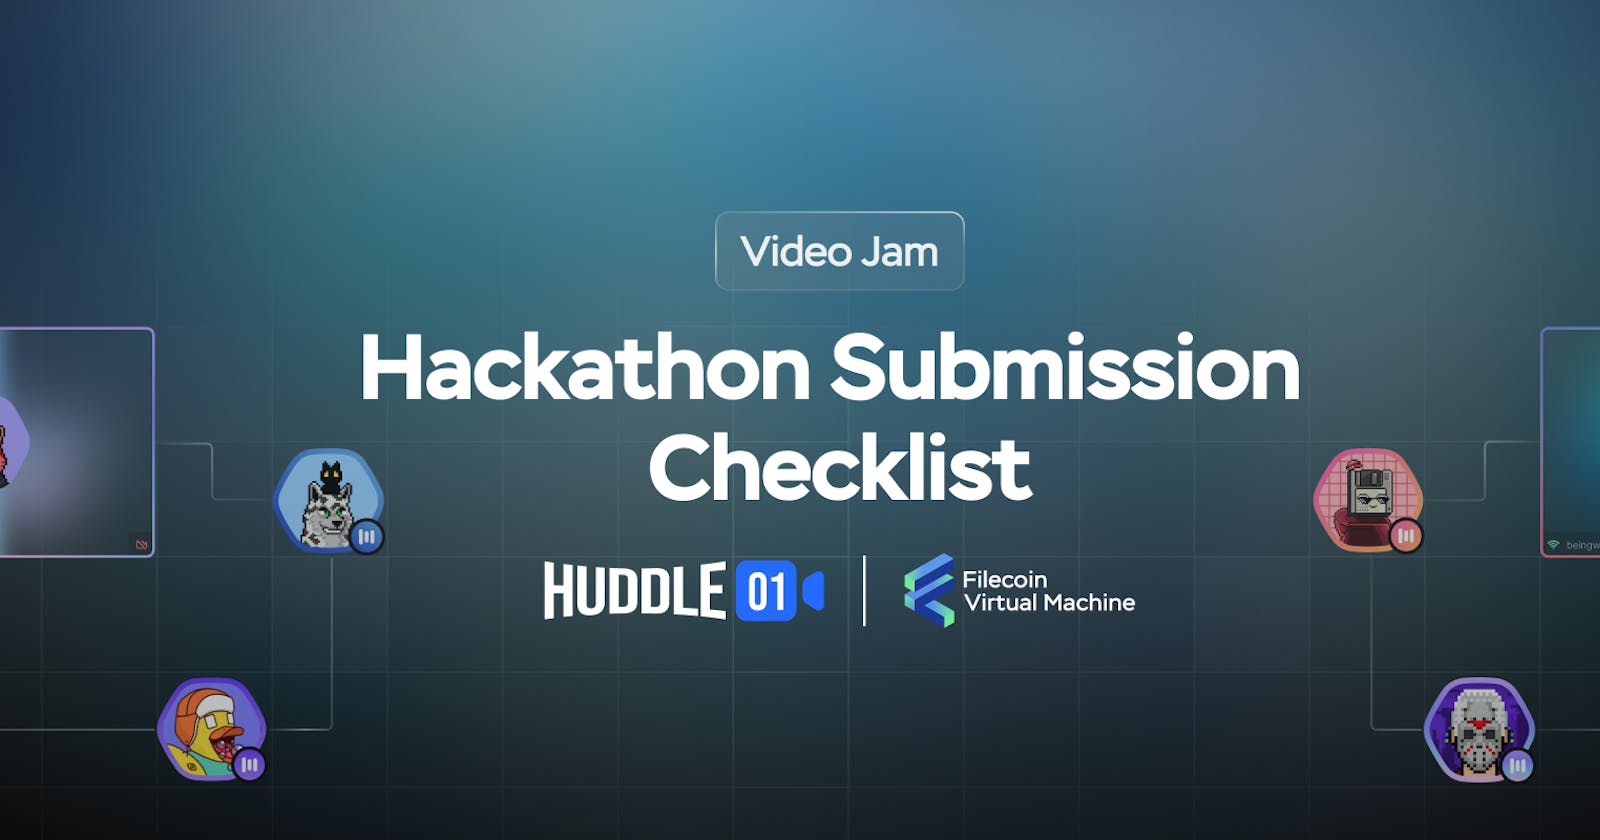 Huddle01 X FVM: Video Jam Hackathon Submission Checklist ✅